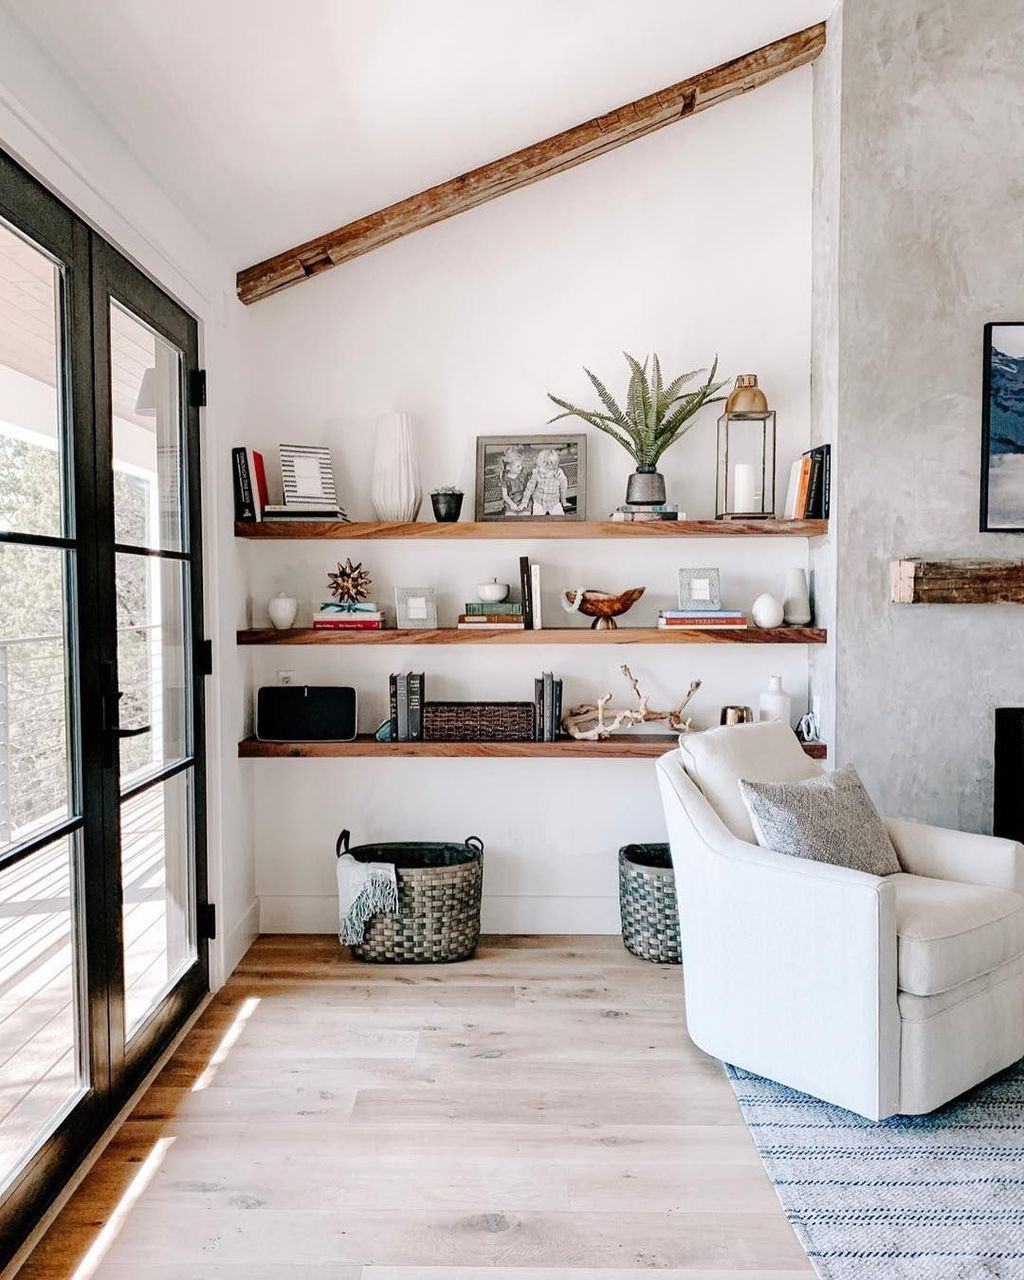 Living Room Shelf Ideas
 35 Stunning Floating Shelves For Living Room Decor Ideas